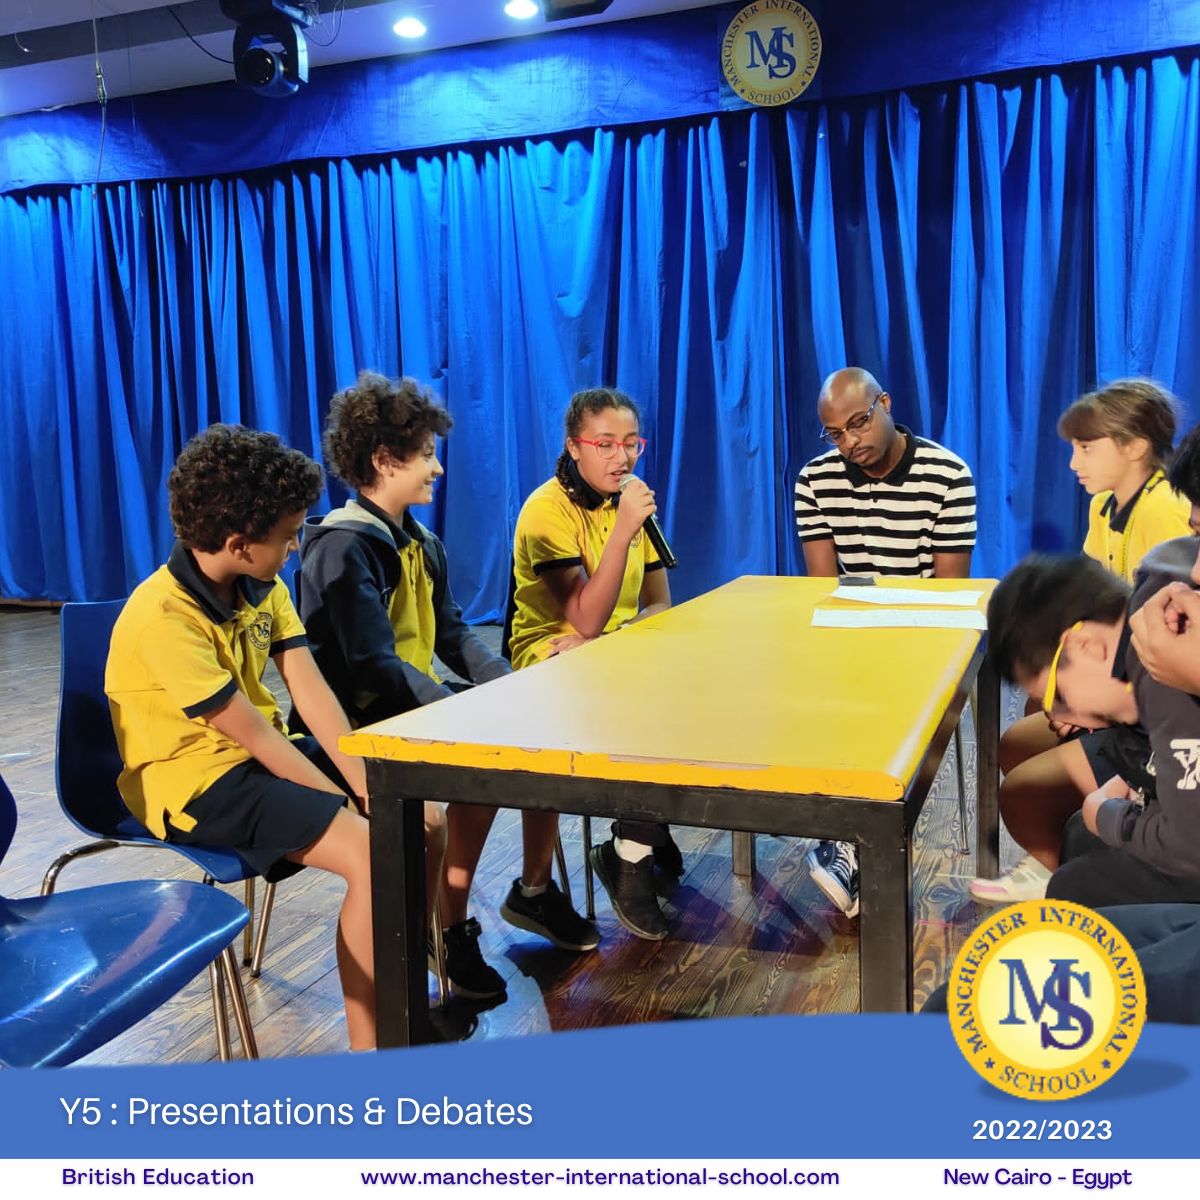 Y5 : Presentations & Debates